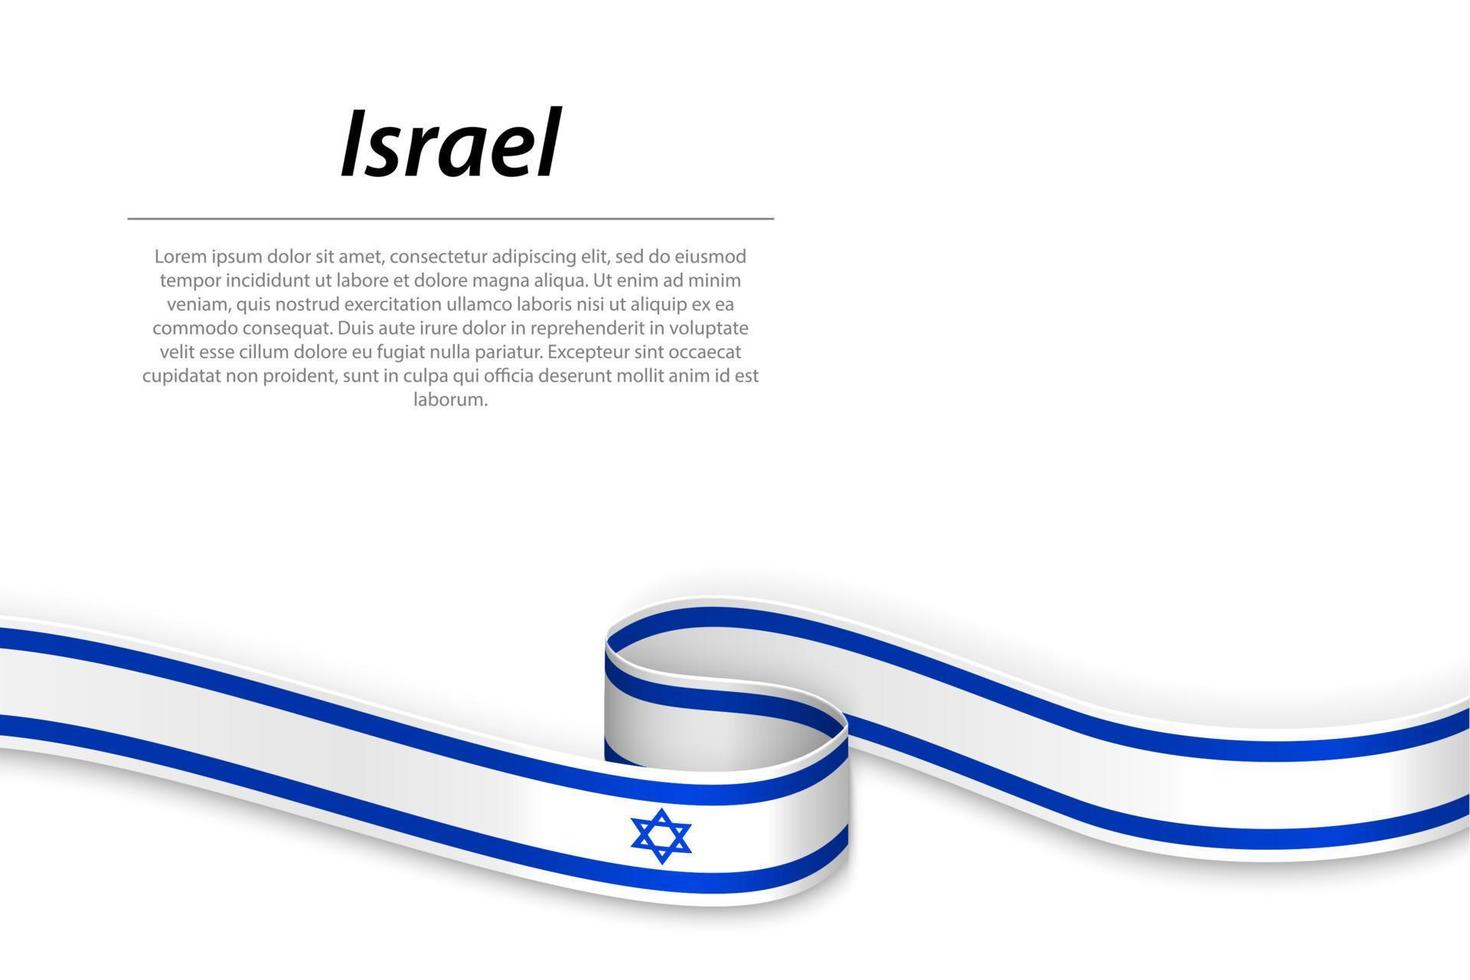 schwenkendes band oder banner mit flagge israels vektor